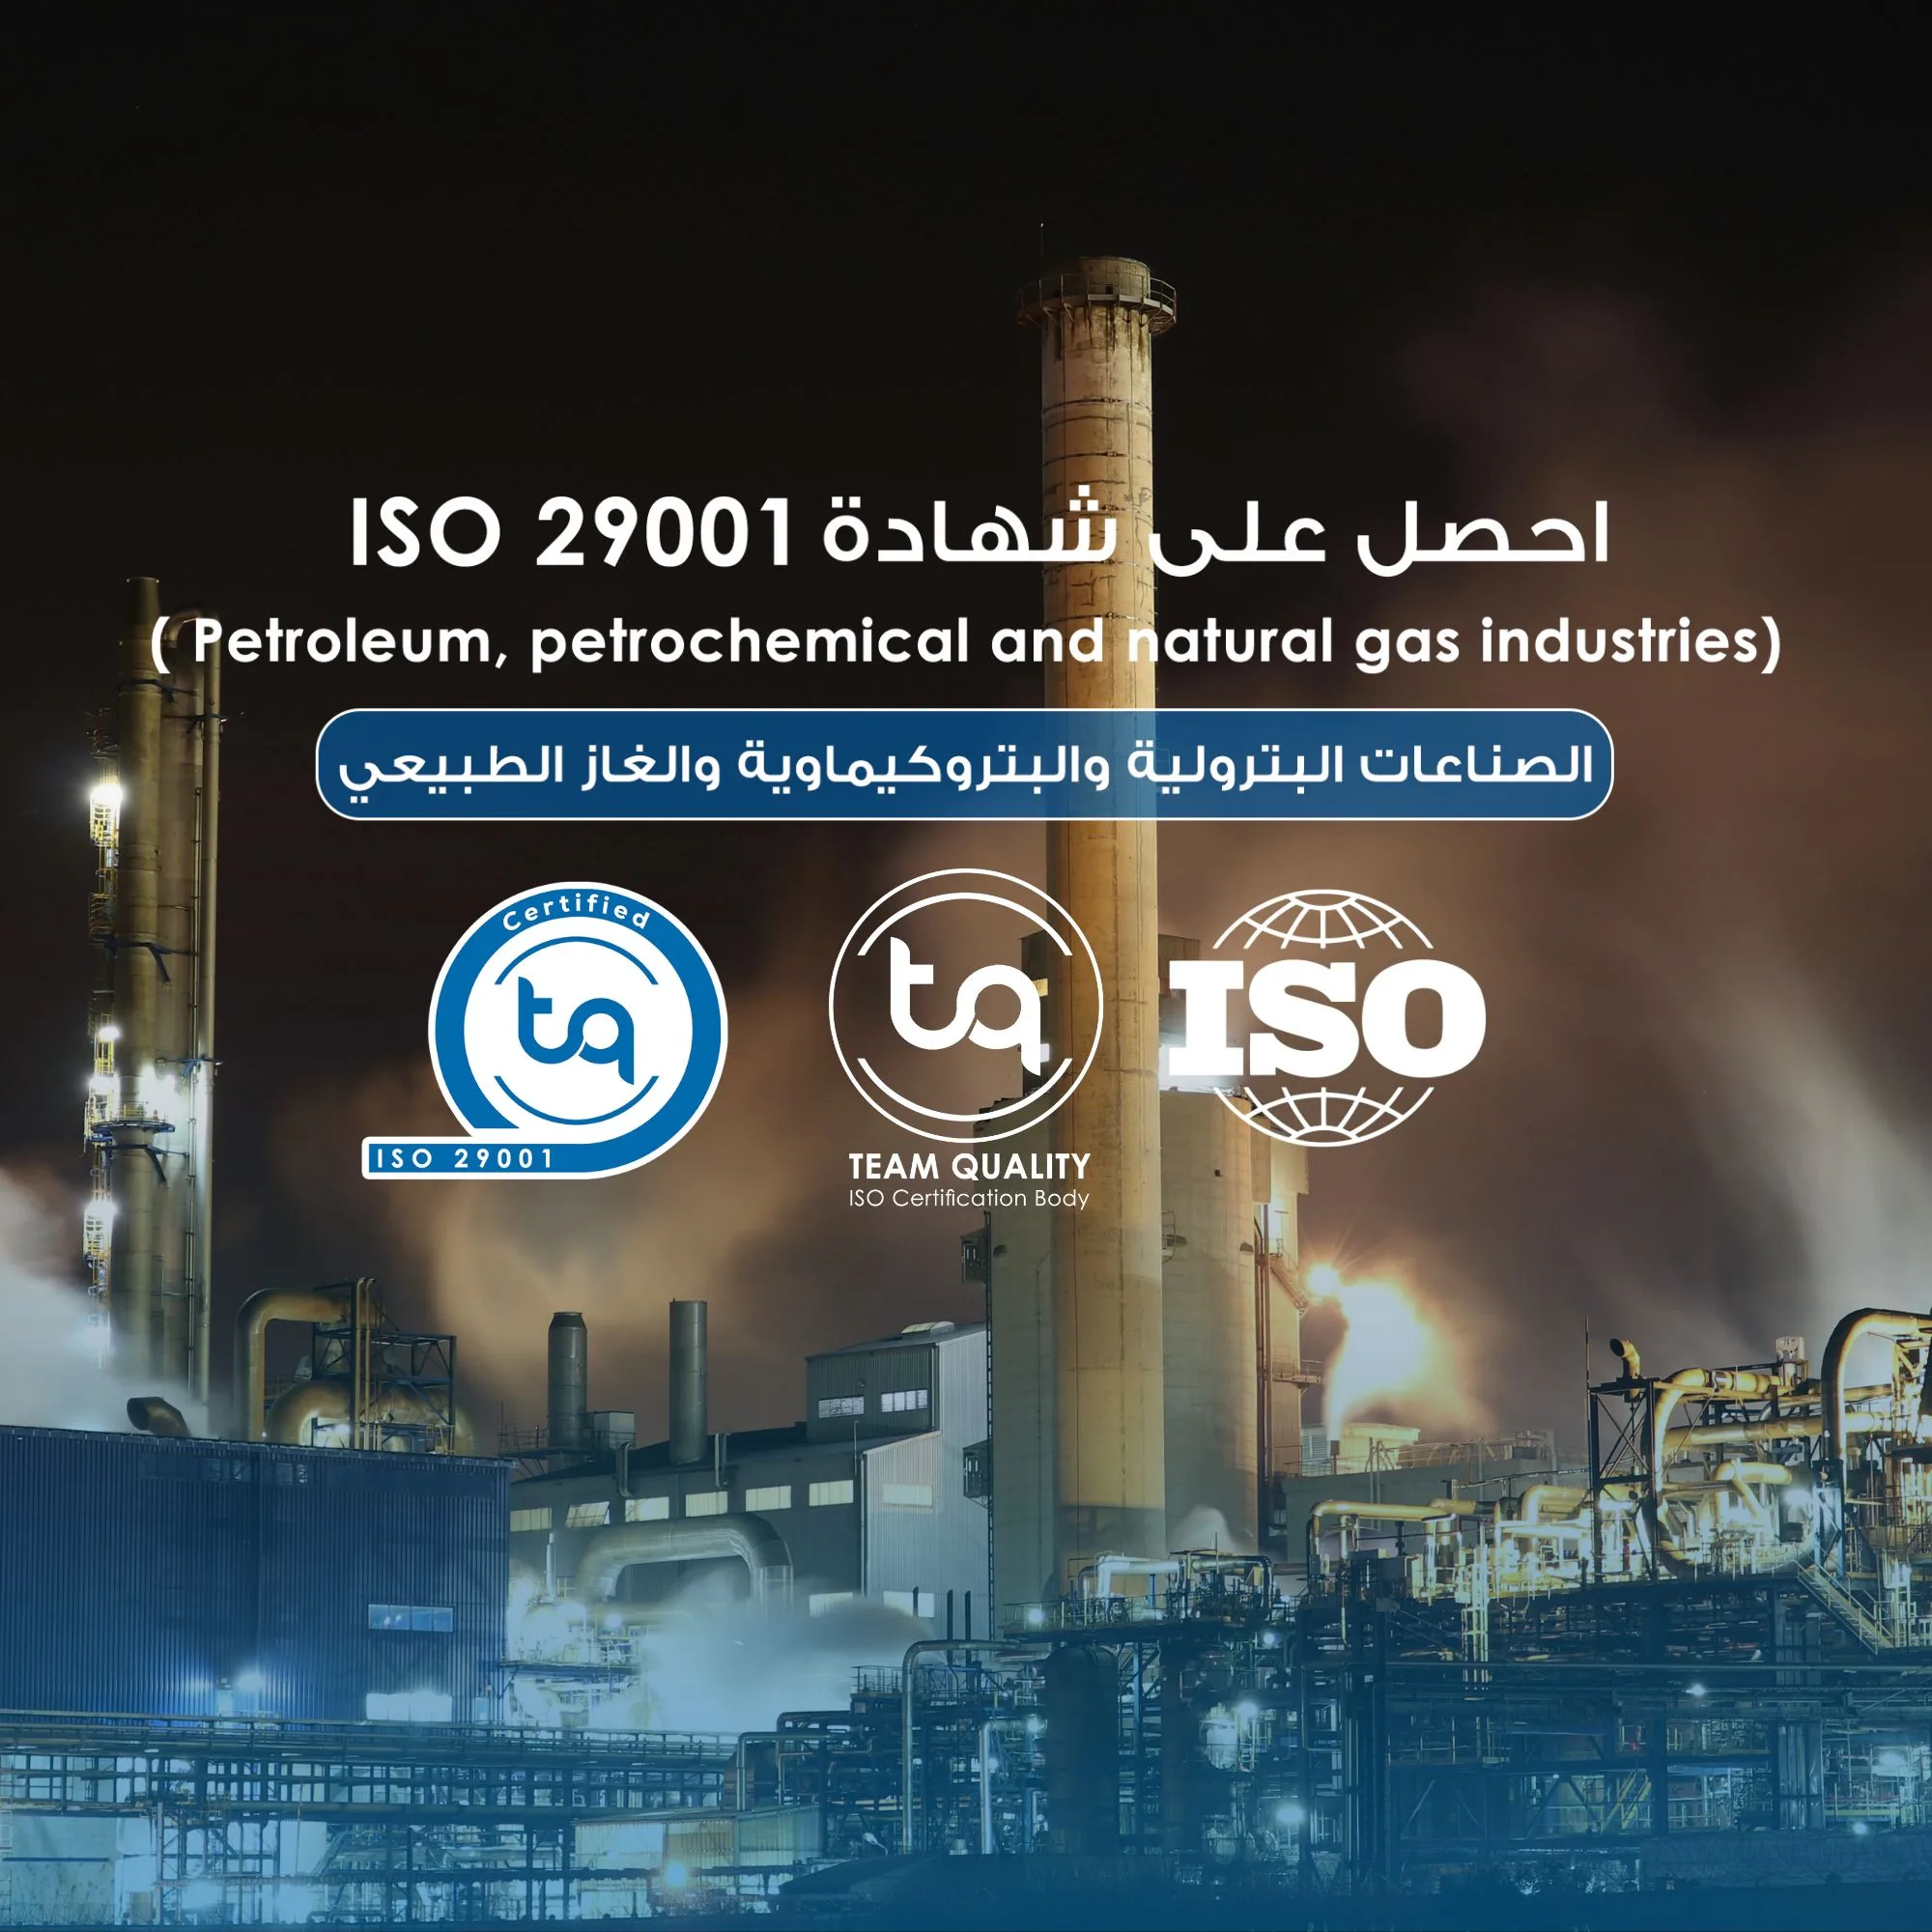 شهادة ISO 29001 تضمن جودة المنتجات والخدمات في قطاع النفط والغاز من خلال تطبيق معايير إضافية لتعزيز السلامة وحماية البيئة وزيادة كفاءة العمليات.